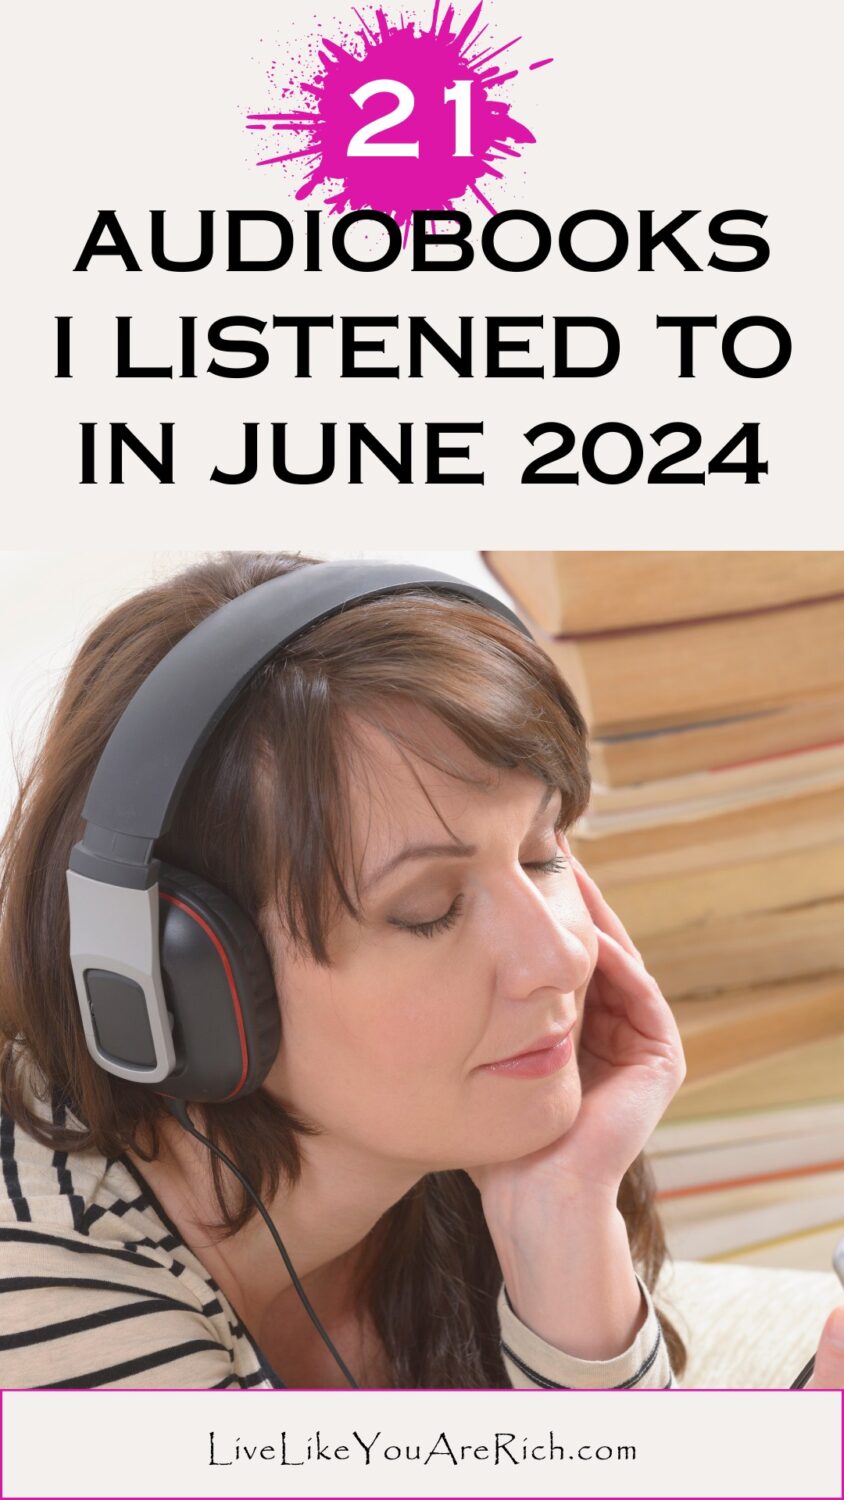 21 Audiobooks I Listened To In June 2024